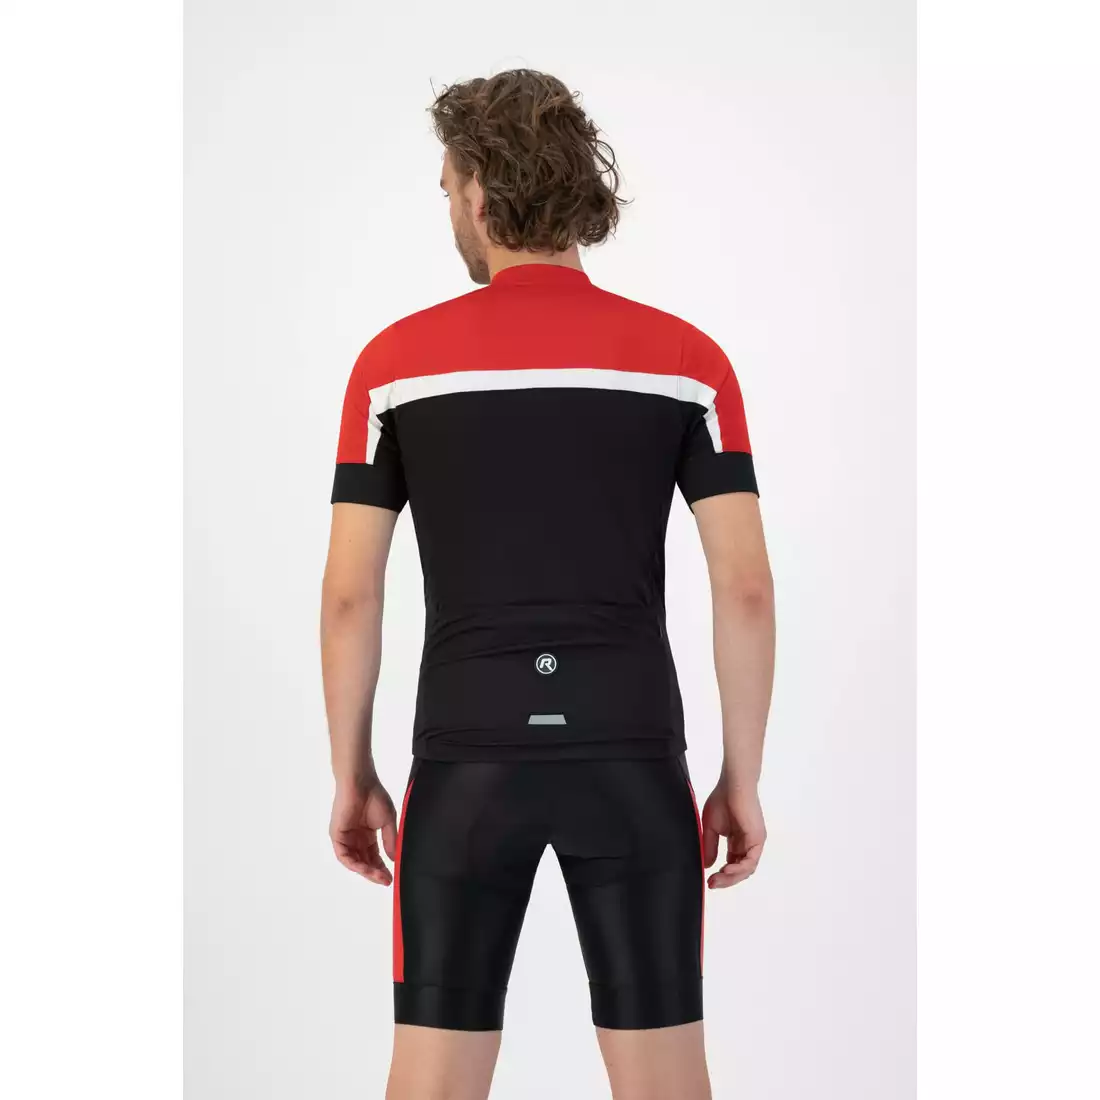 Rogelli COURSE pánský cyklistický dres, černá a červená